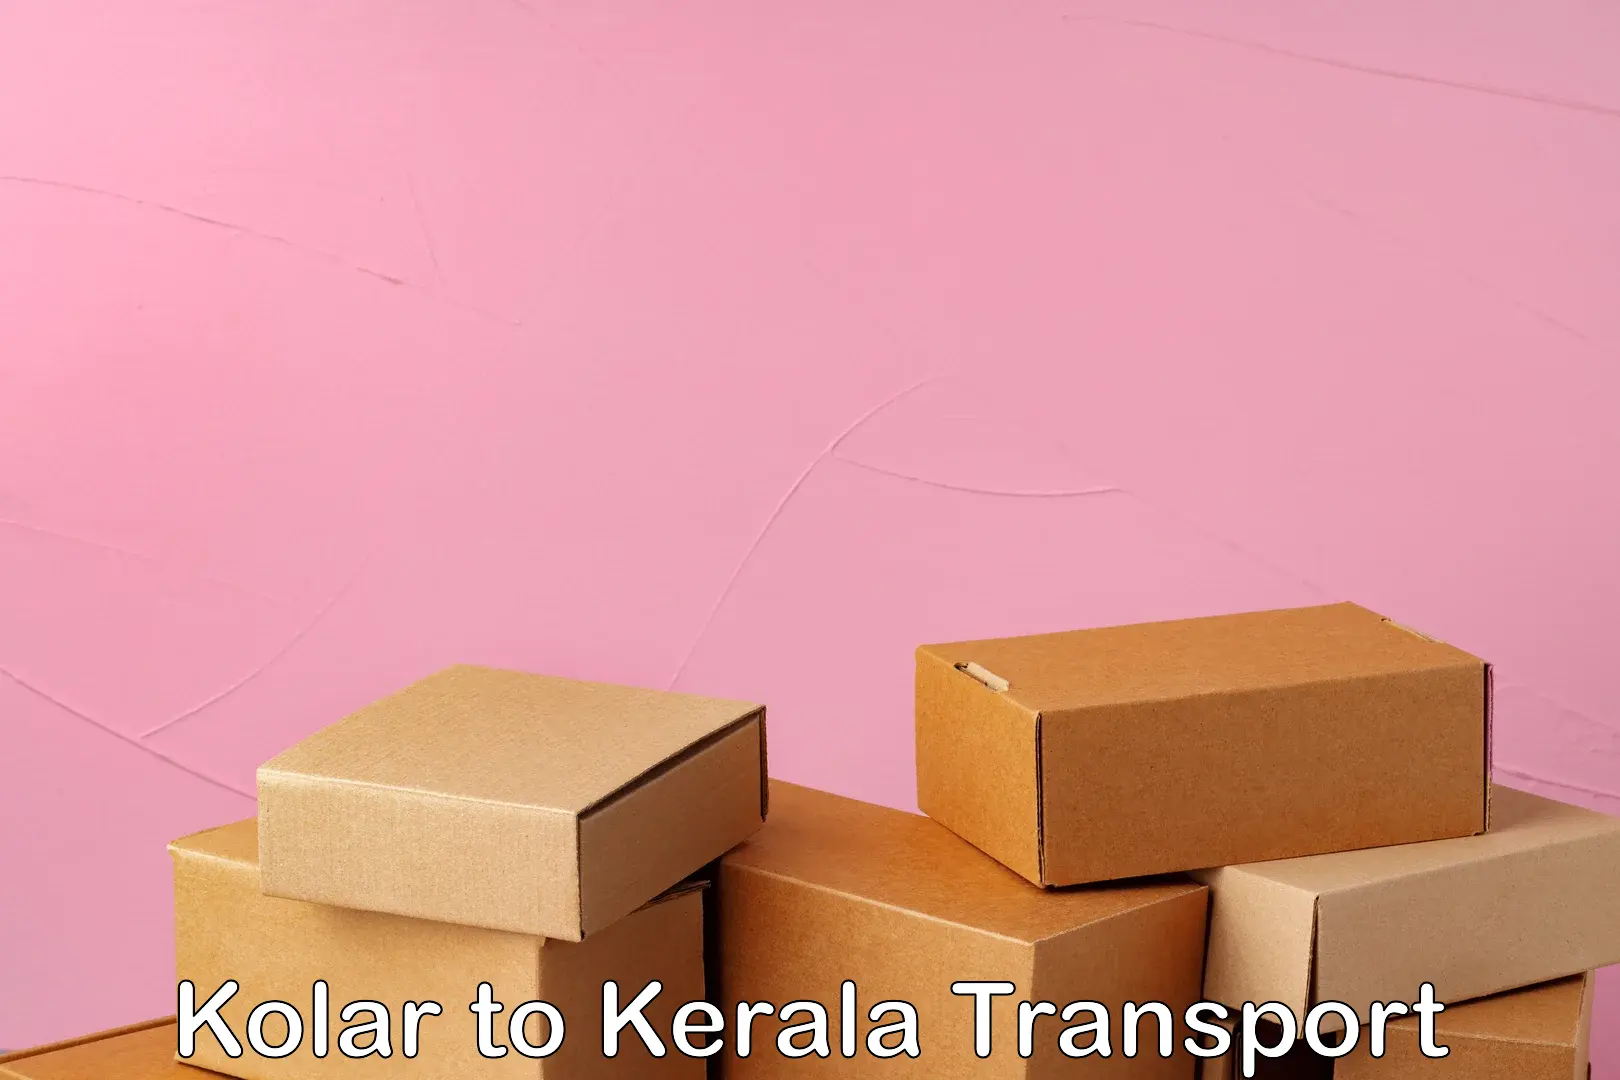 India truck logistics services Kolar to Kalanjoor